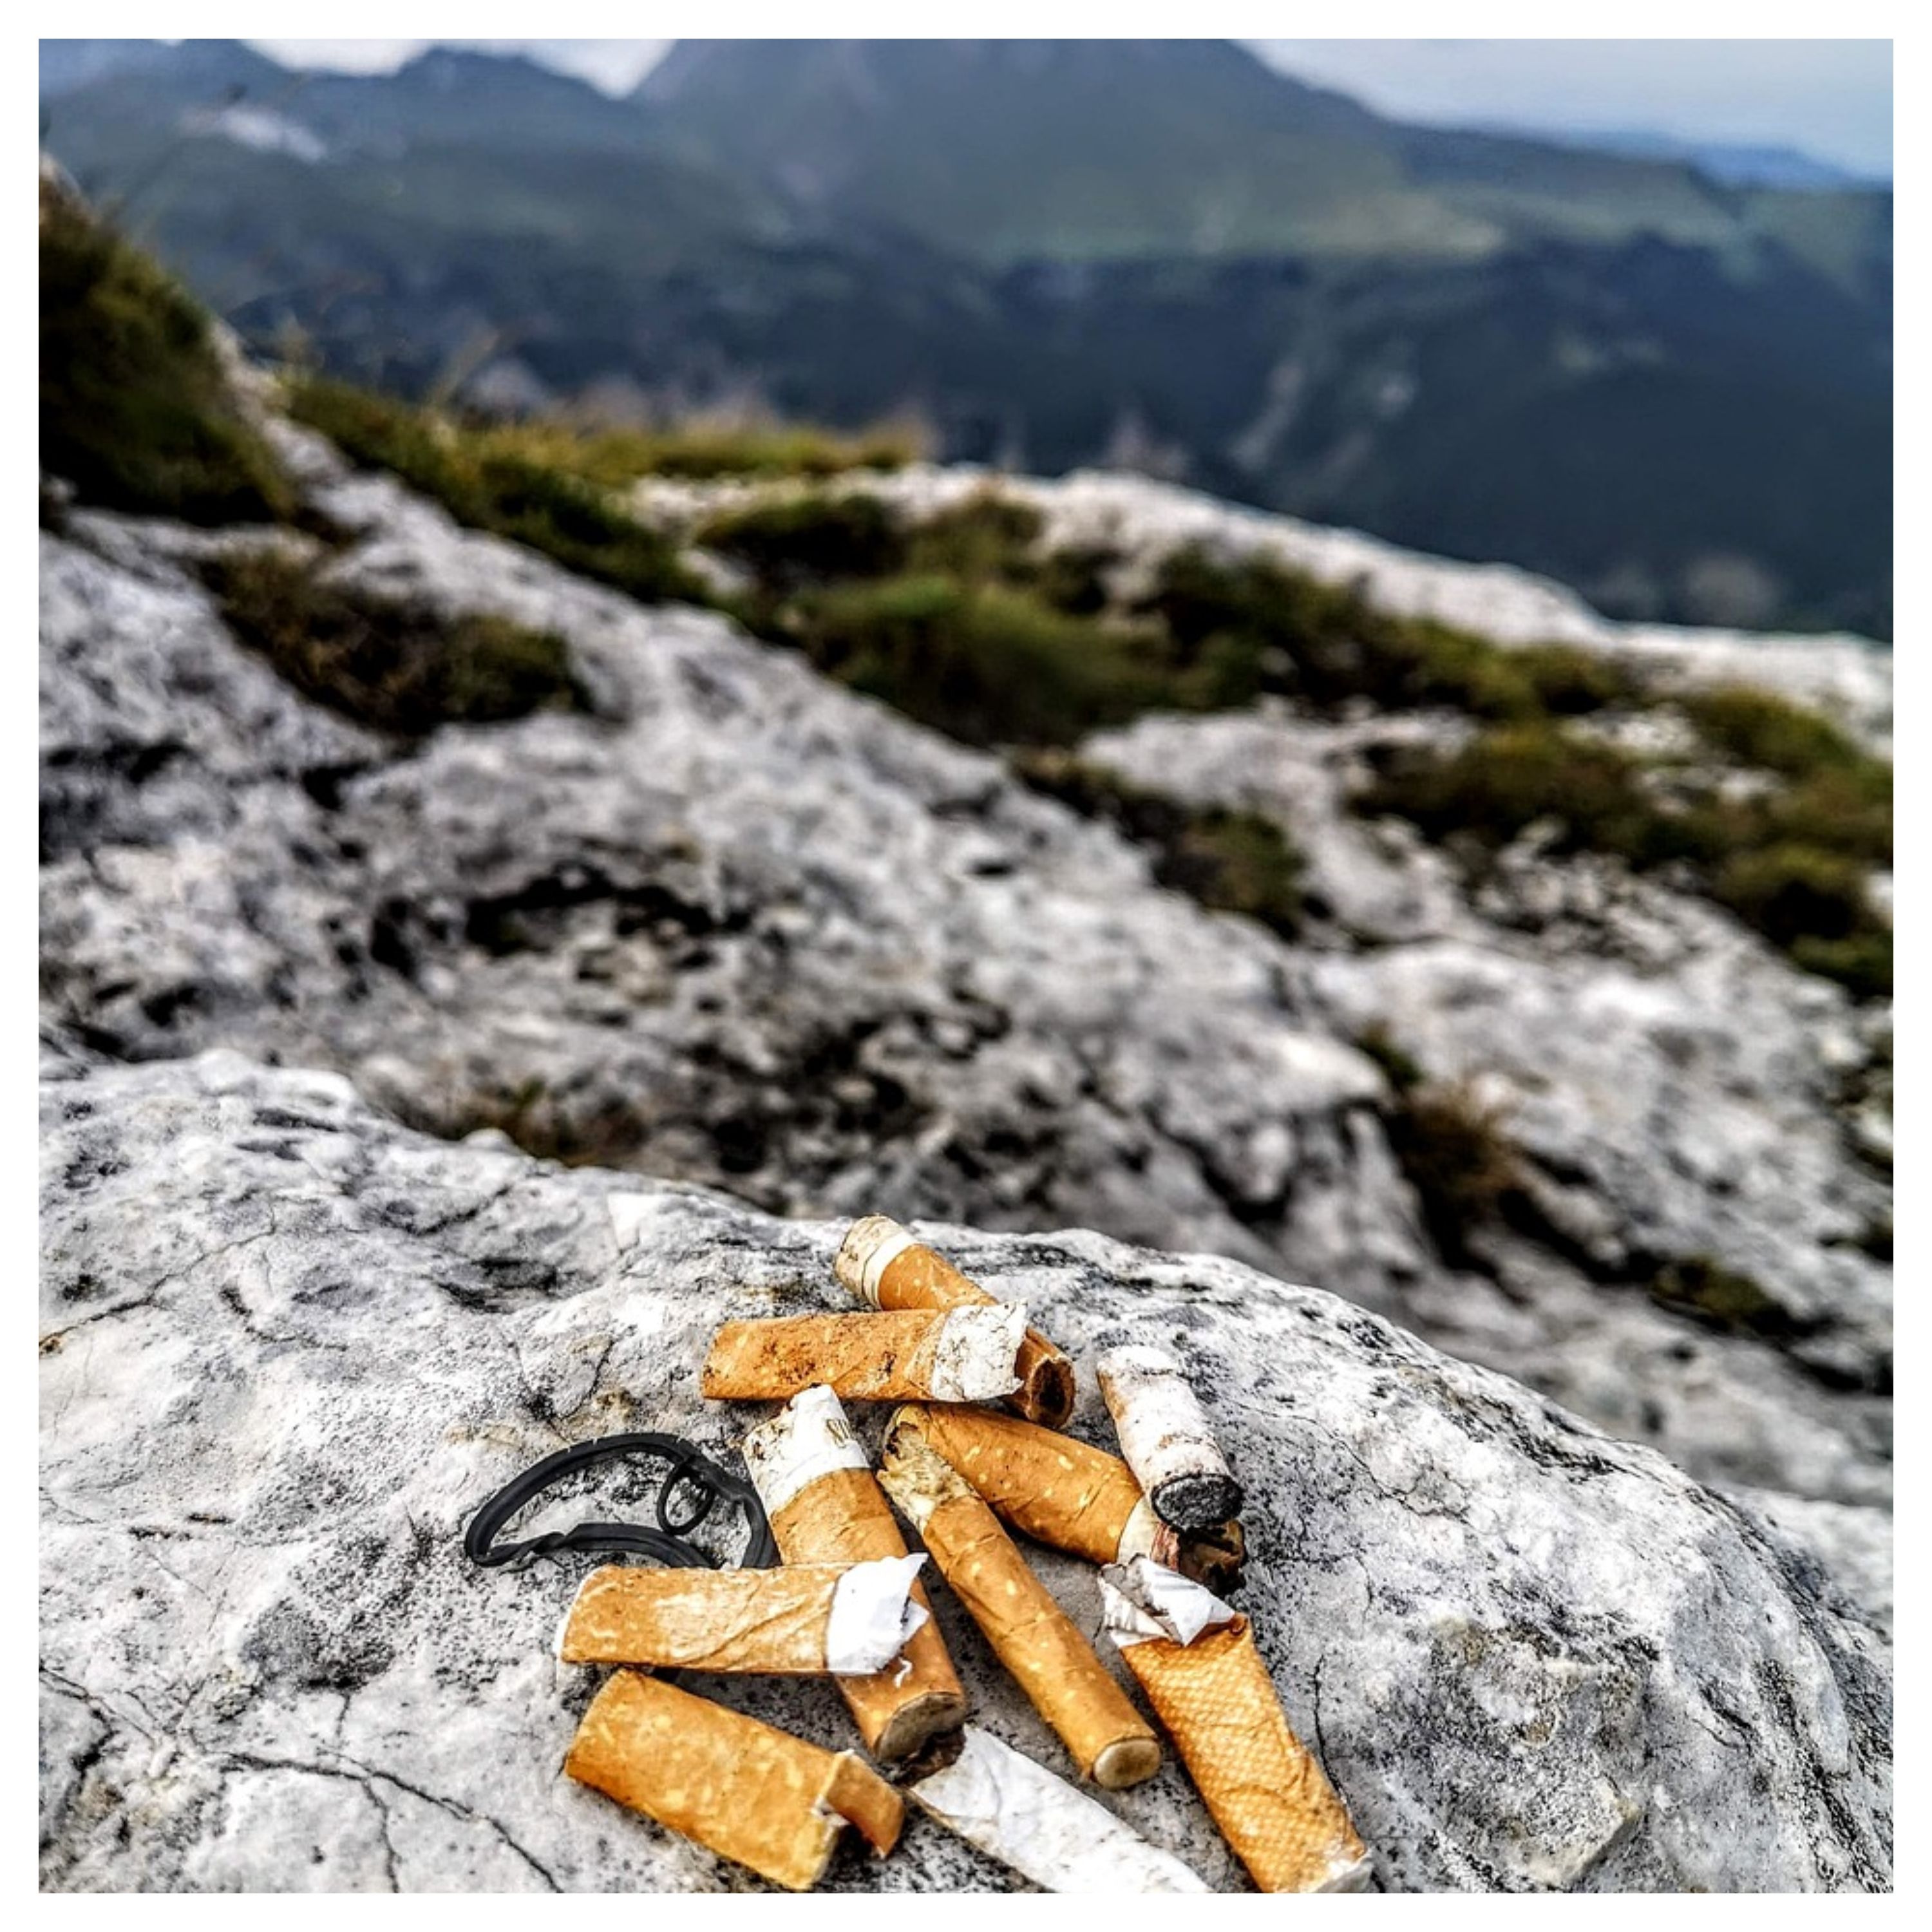 Mégots de cigarette en pleine nature, avec des montagnes en fond